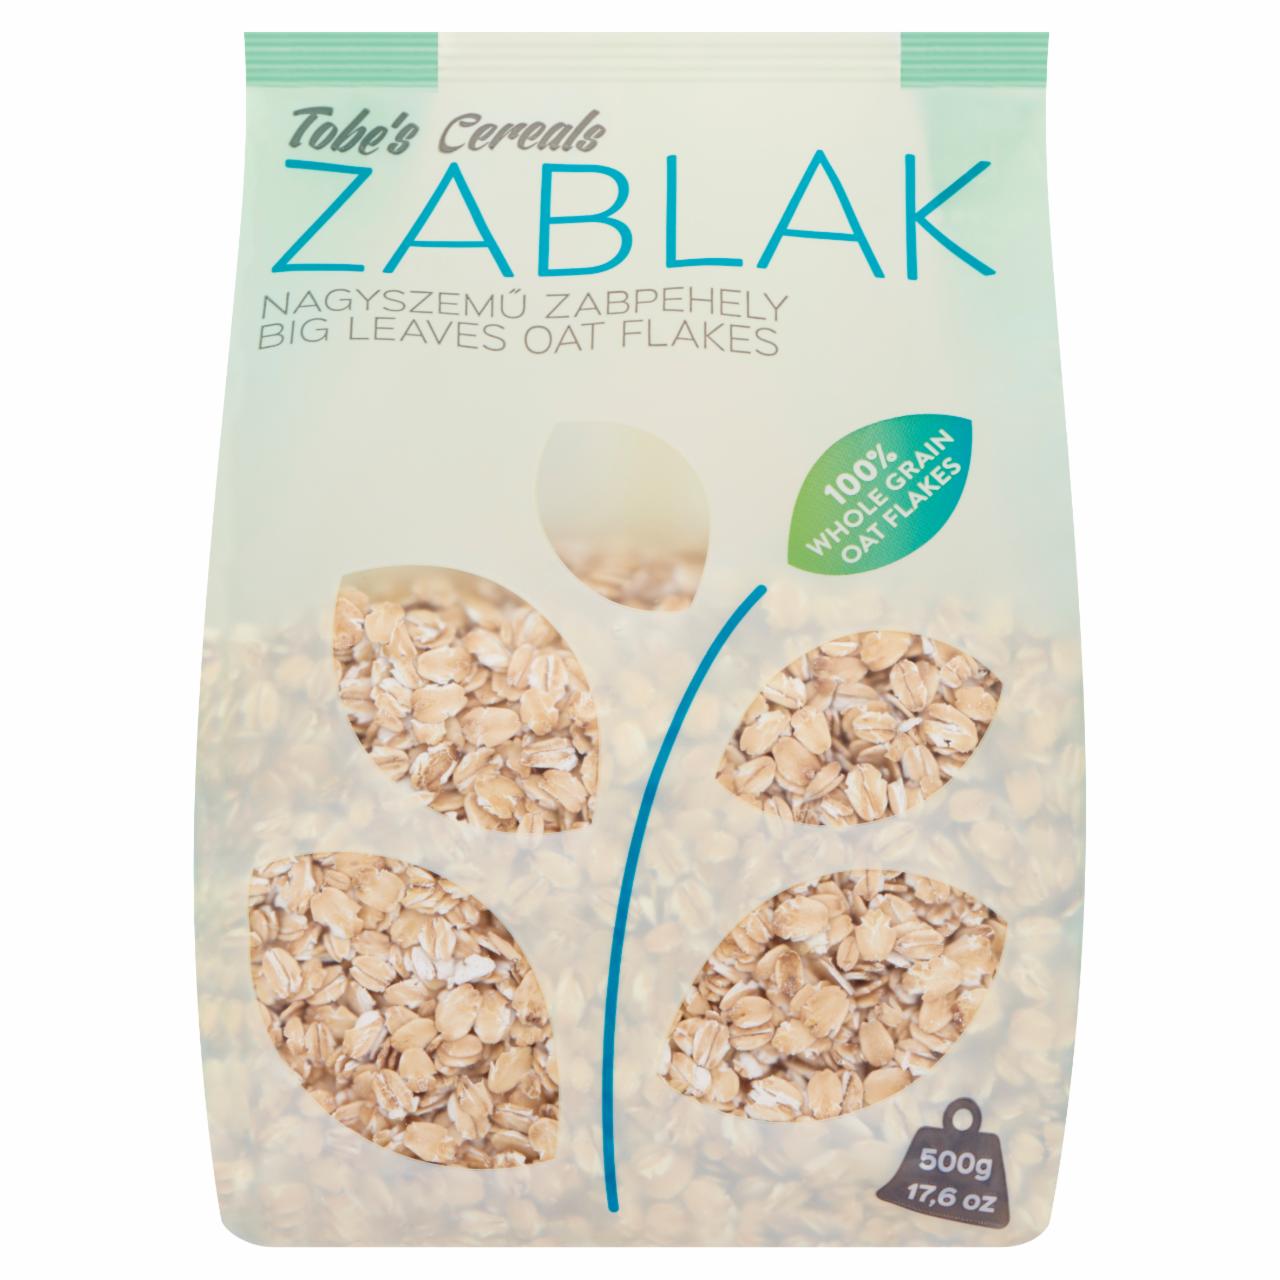 Képek - Tobe's Cereals Zablak nagyszemű natúr zabpehely 500 g